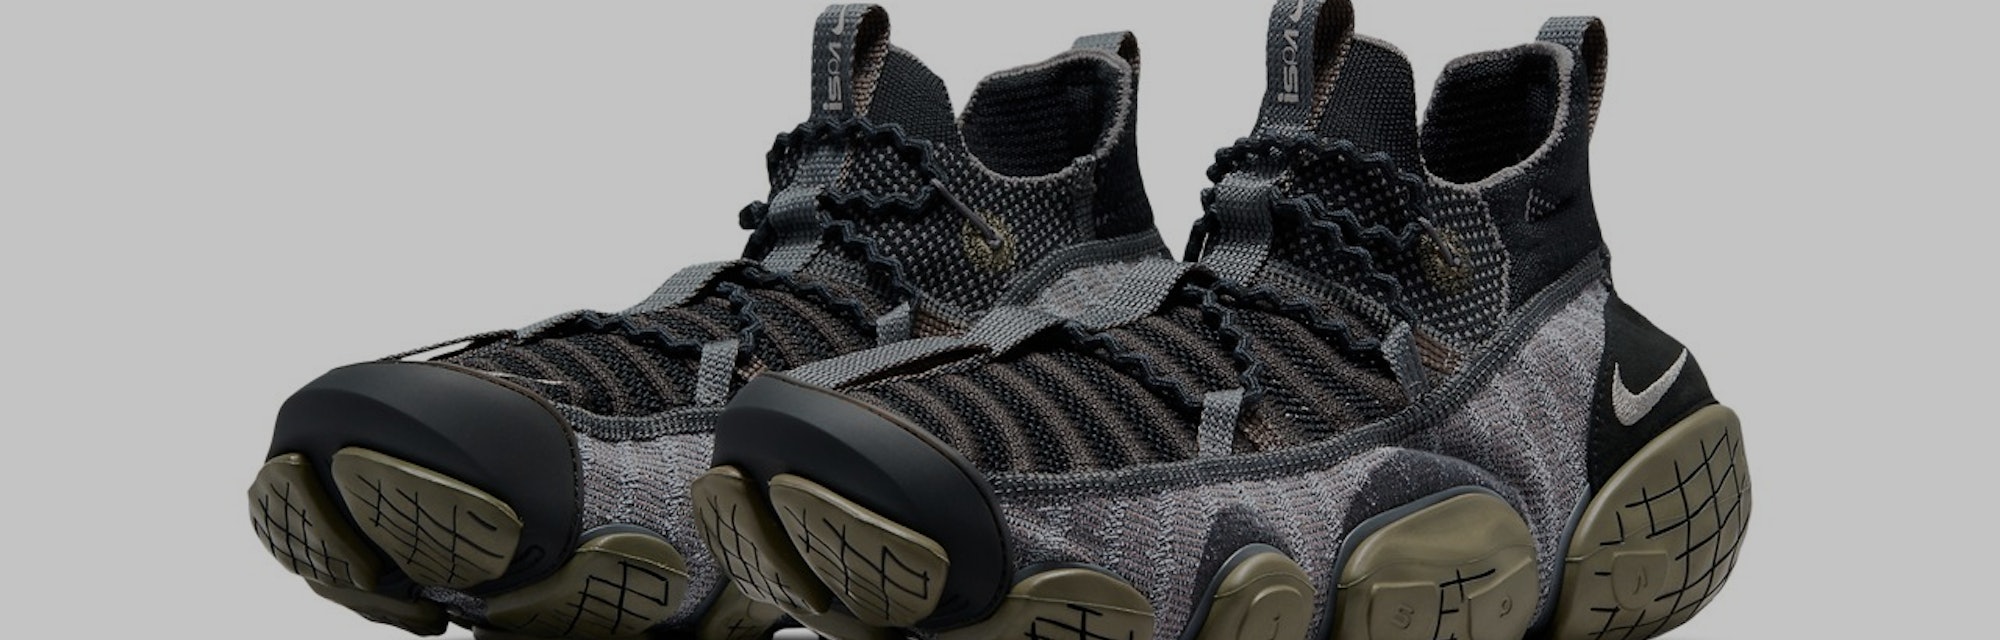 Nike's break-apart ISPA Link sneaker makes its debut in "Black" and "Barley"